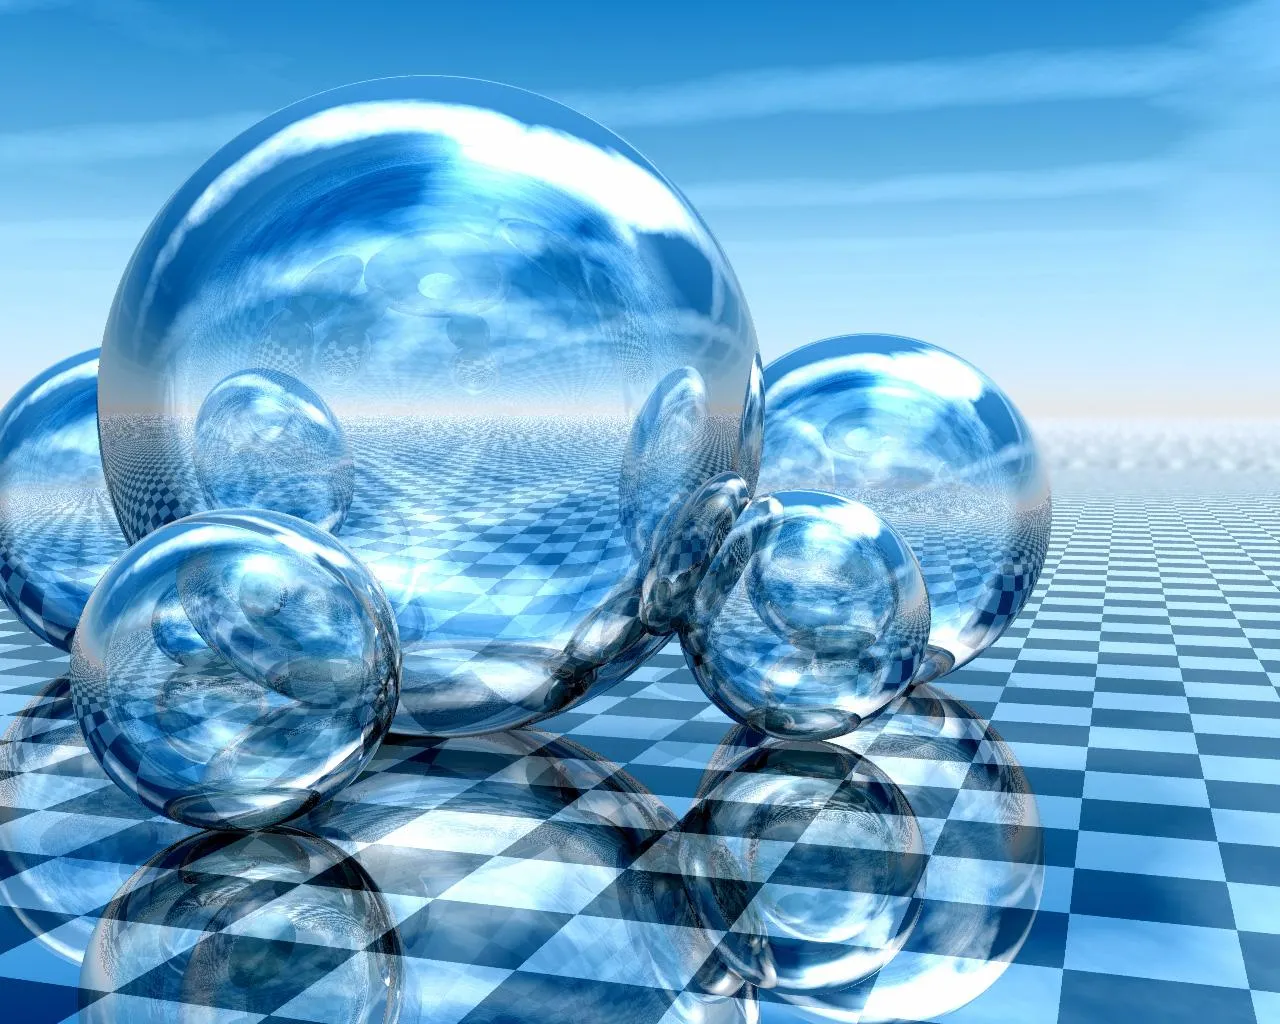  ... ajedrez - juegos - arte digital - 3D - fantasía - colores - azul